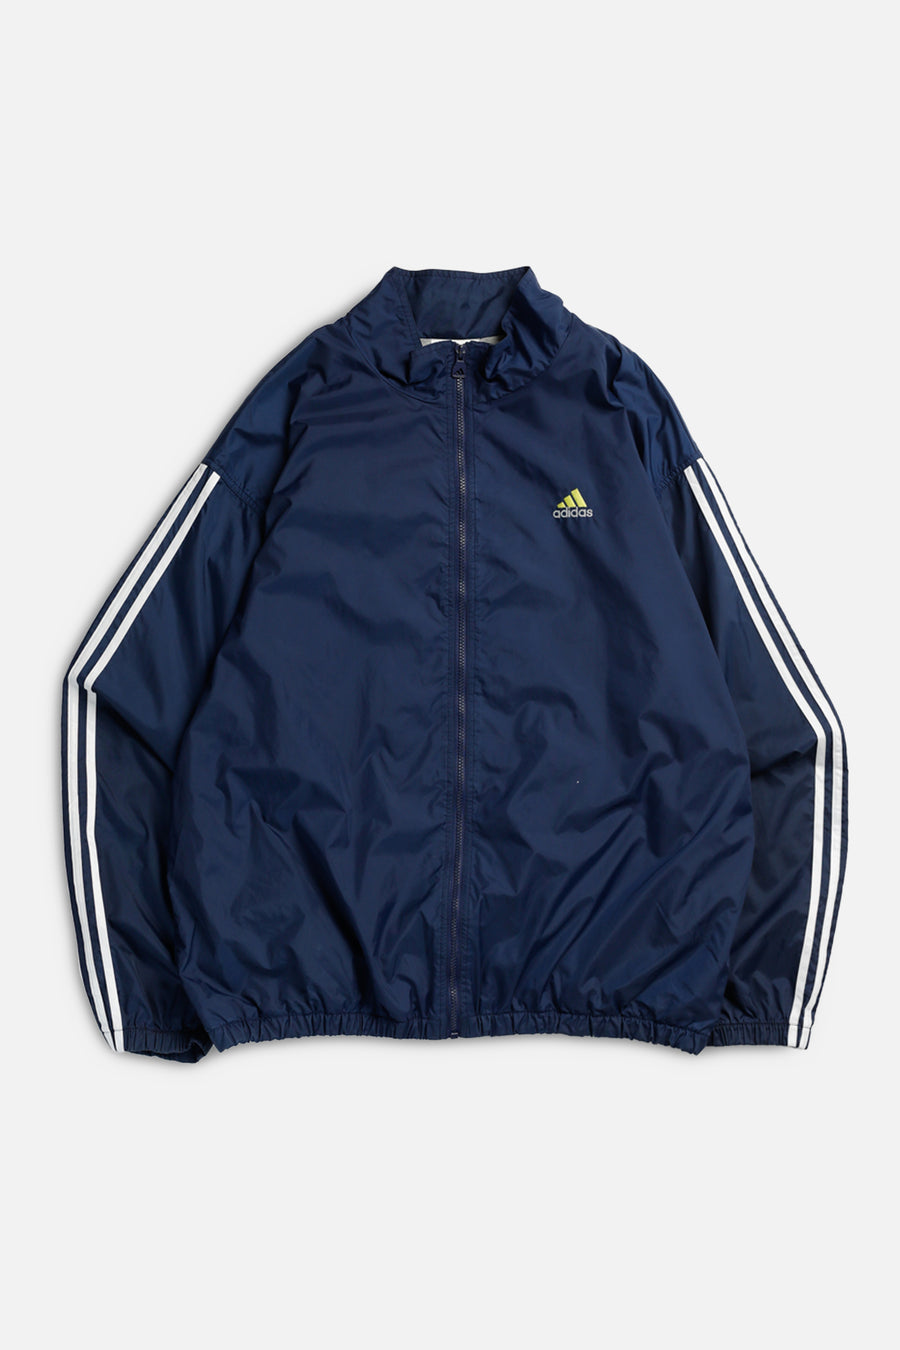 Vintage Adidas Windbreaker Jacket - XXL